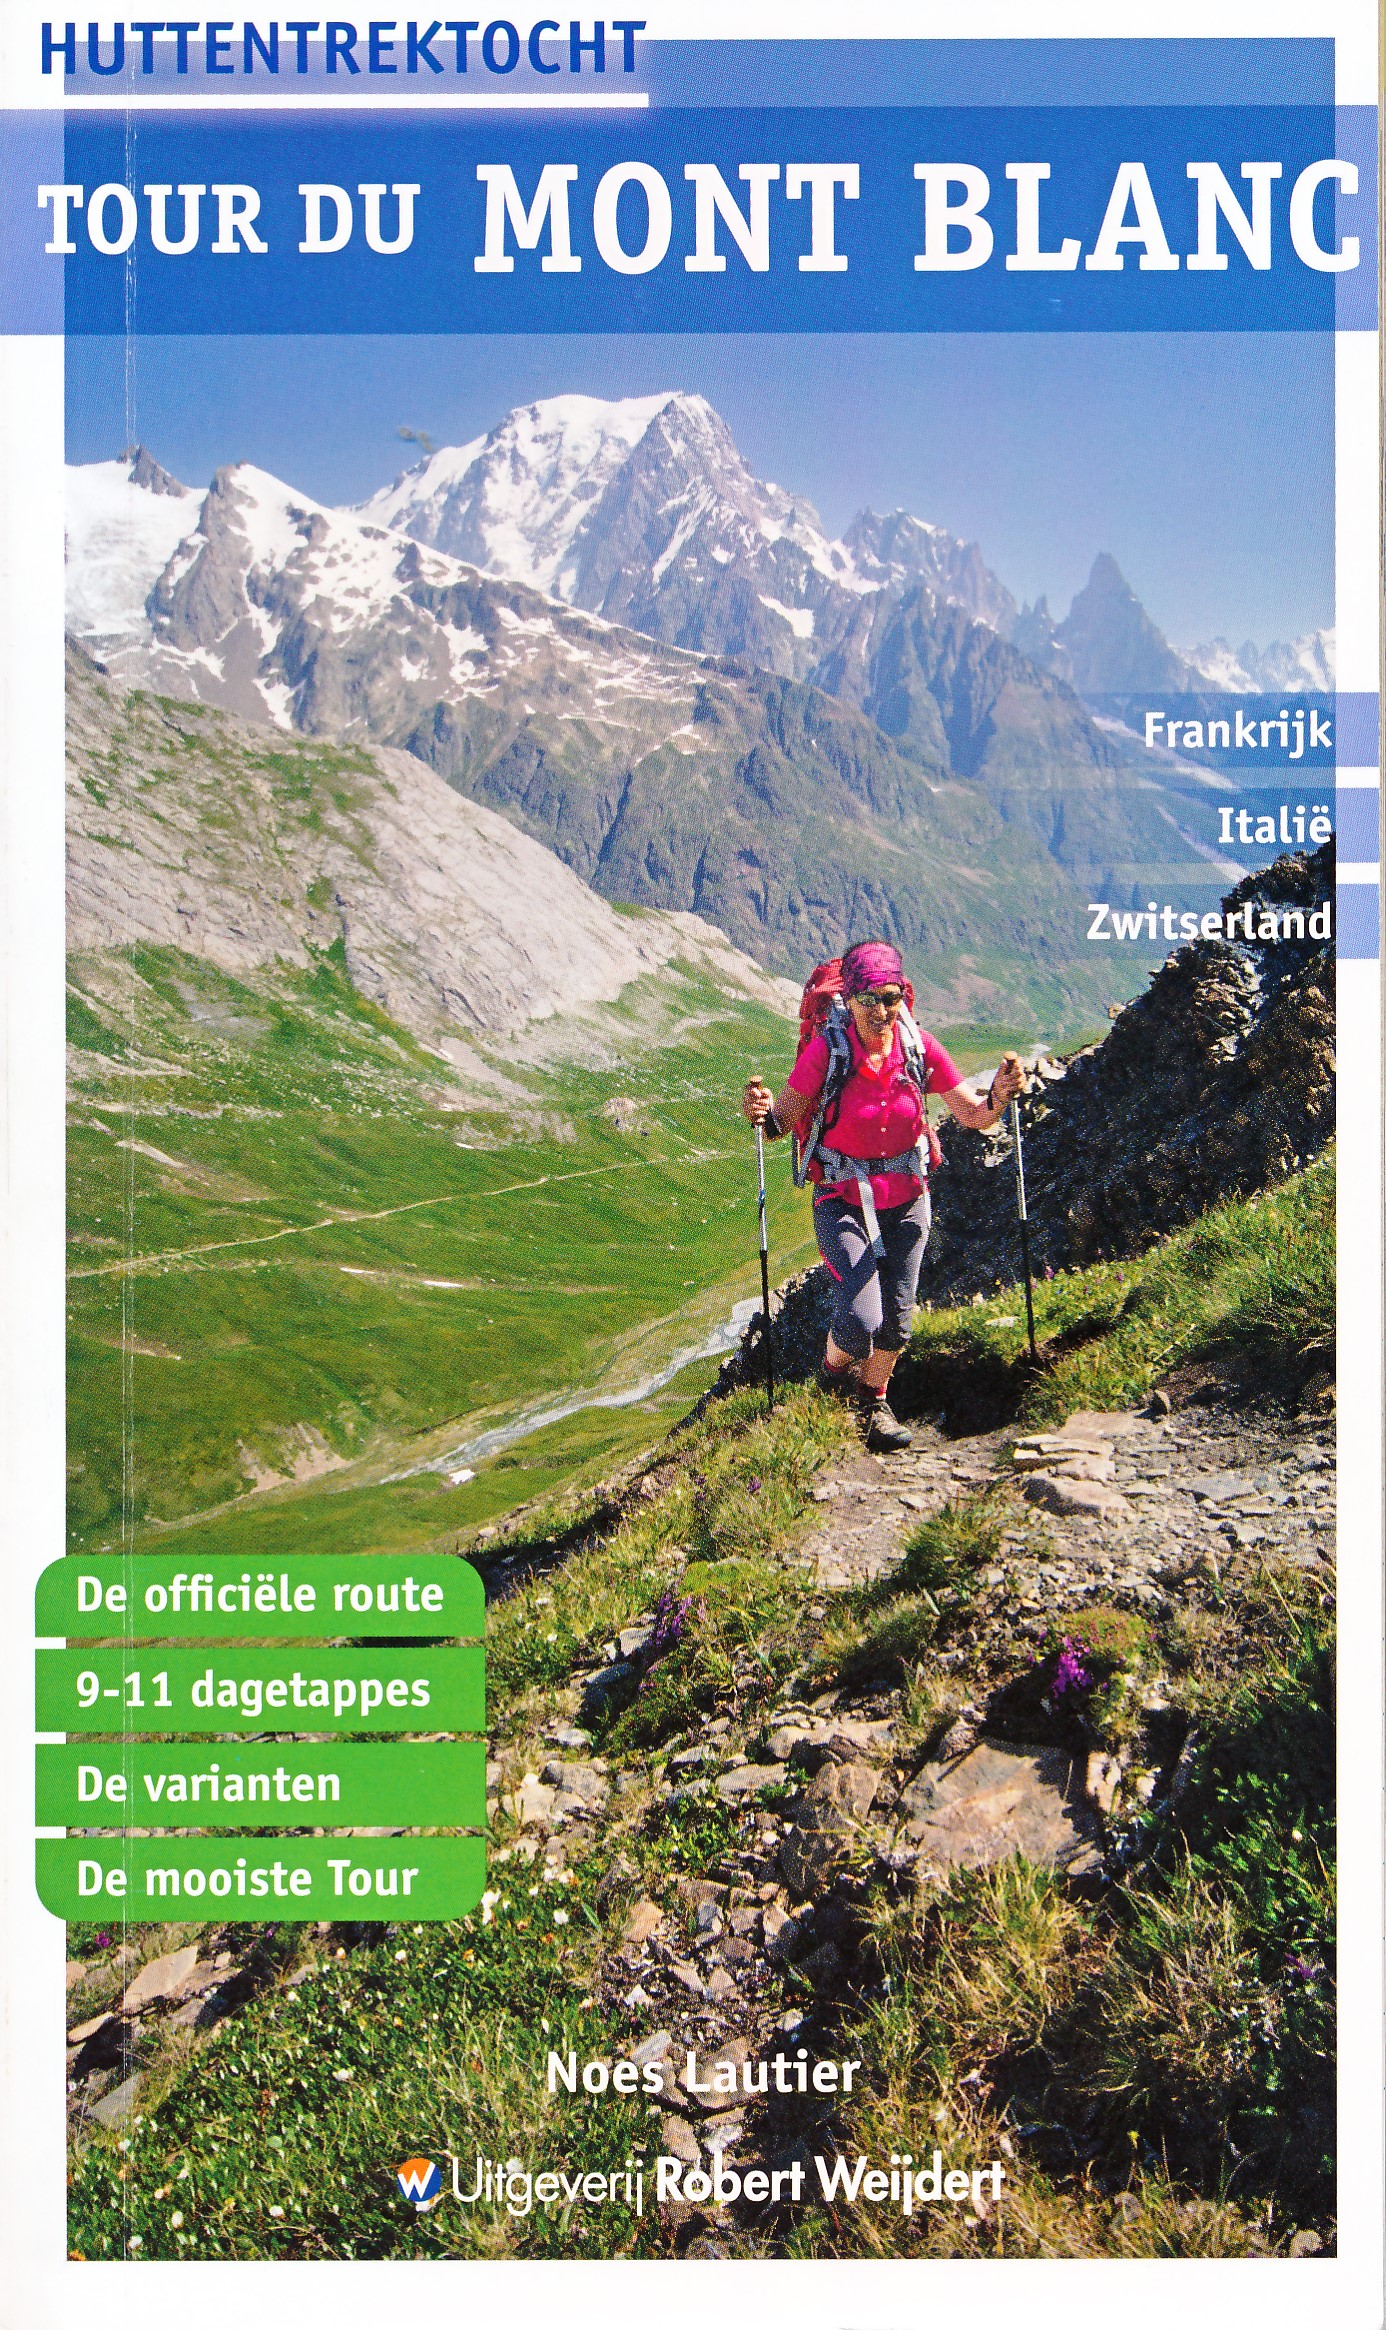 Online bestellen: Wandelgids Tour du Mont Blanc - Huttentrektocht | Robert Weijdert